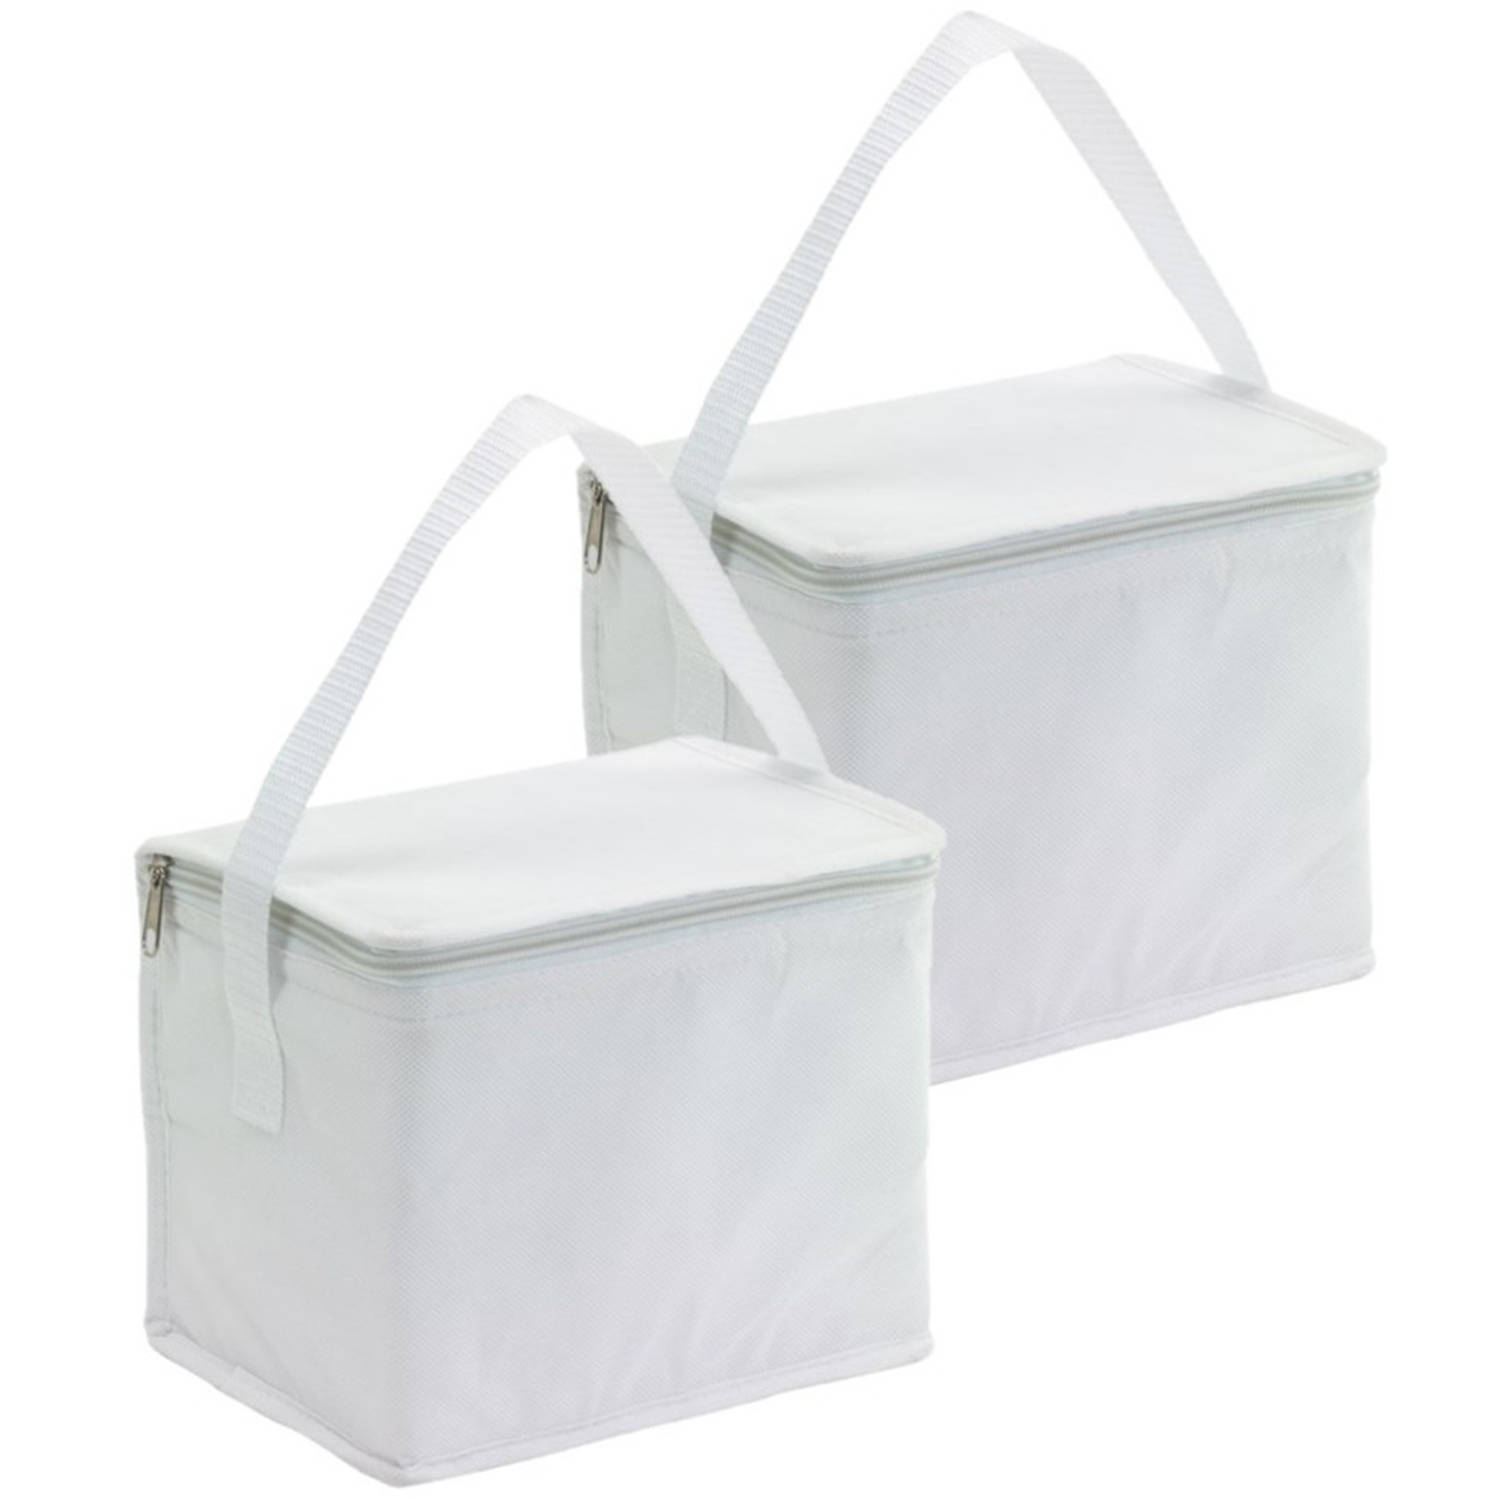 2x stuks kleine koeltassen voor lunch wit 20 x 13 x 17 cm 4.5 liter - Koeltas